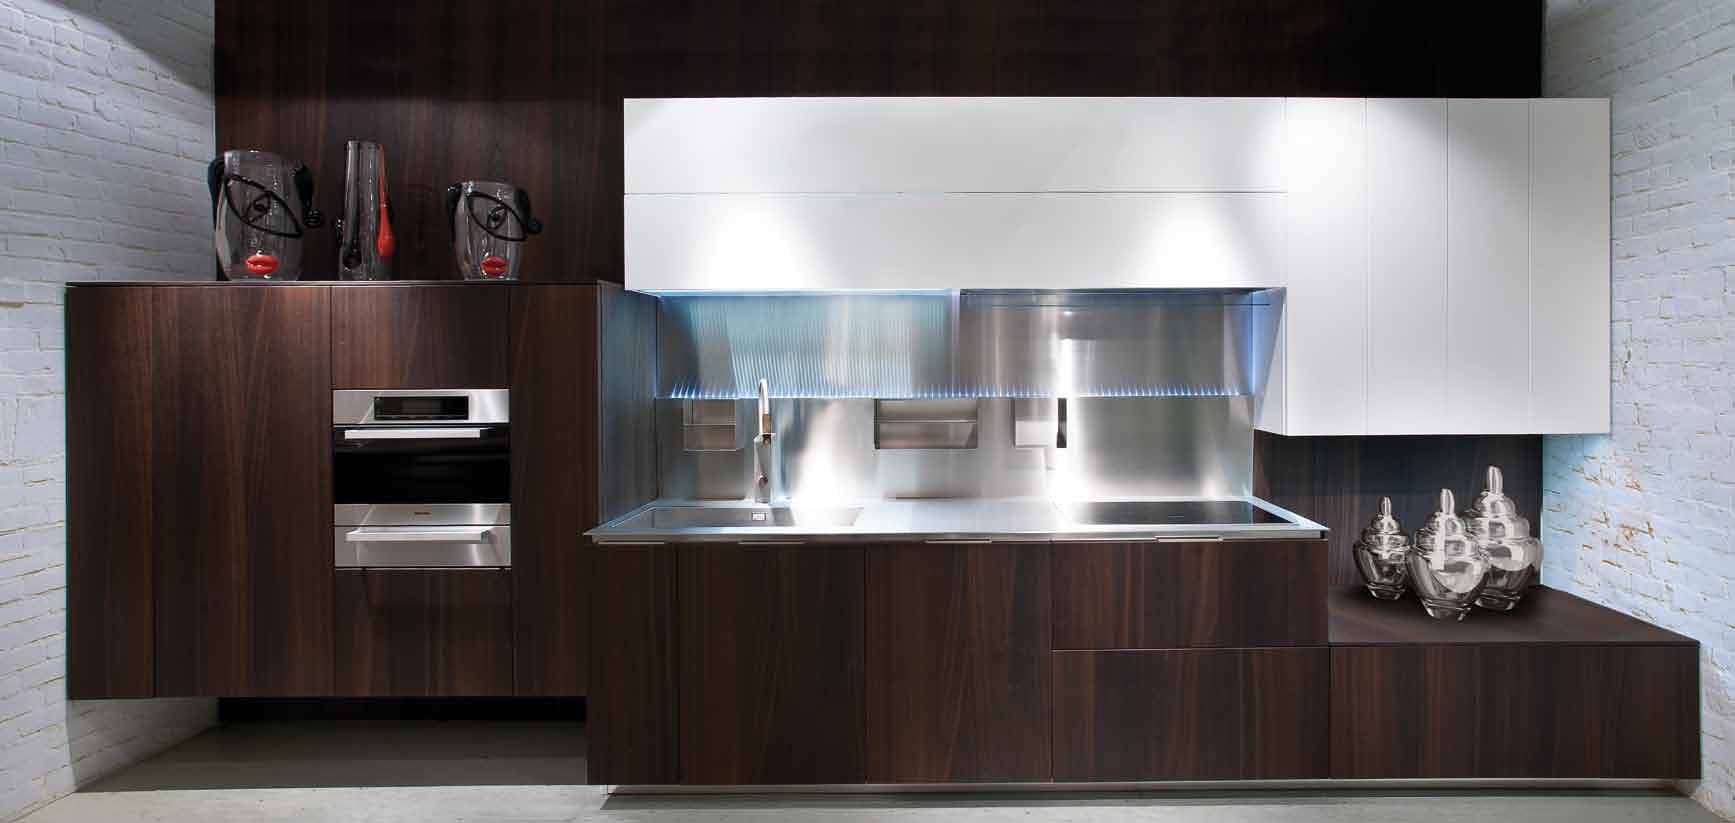 Кухня в стиле хай-тек: фото популярных идей дизайна. примеры идеального сочетания кухонного интерьера в стиле hi-tech. дизайн кухни в стиле хай-тек: 50 лучших фото интерьеров.